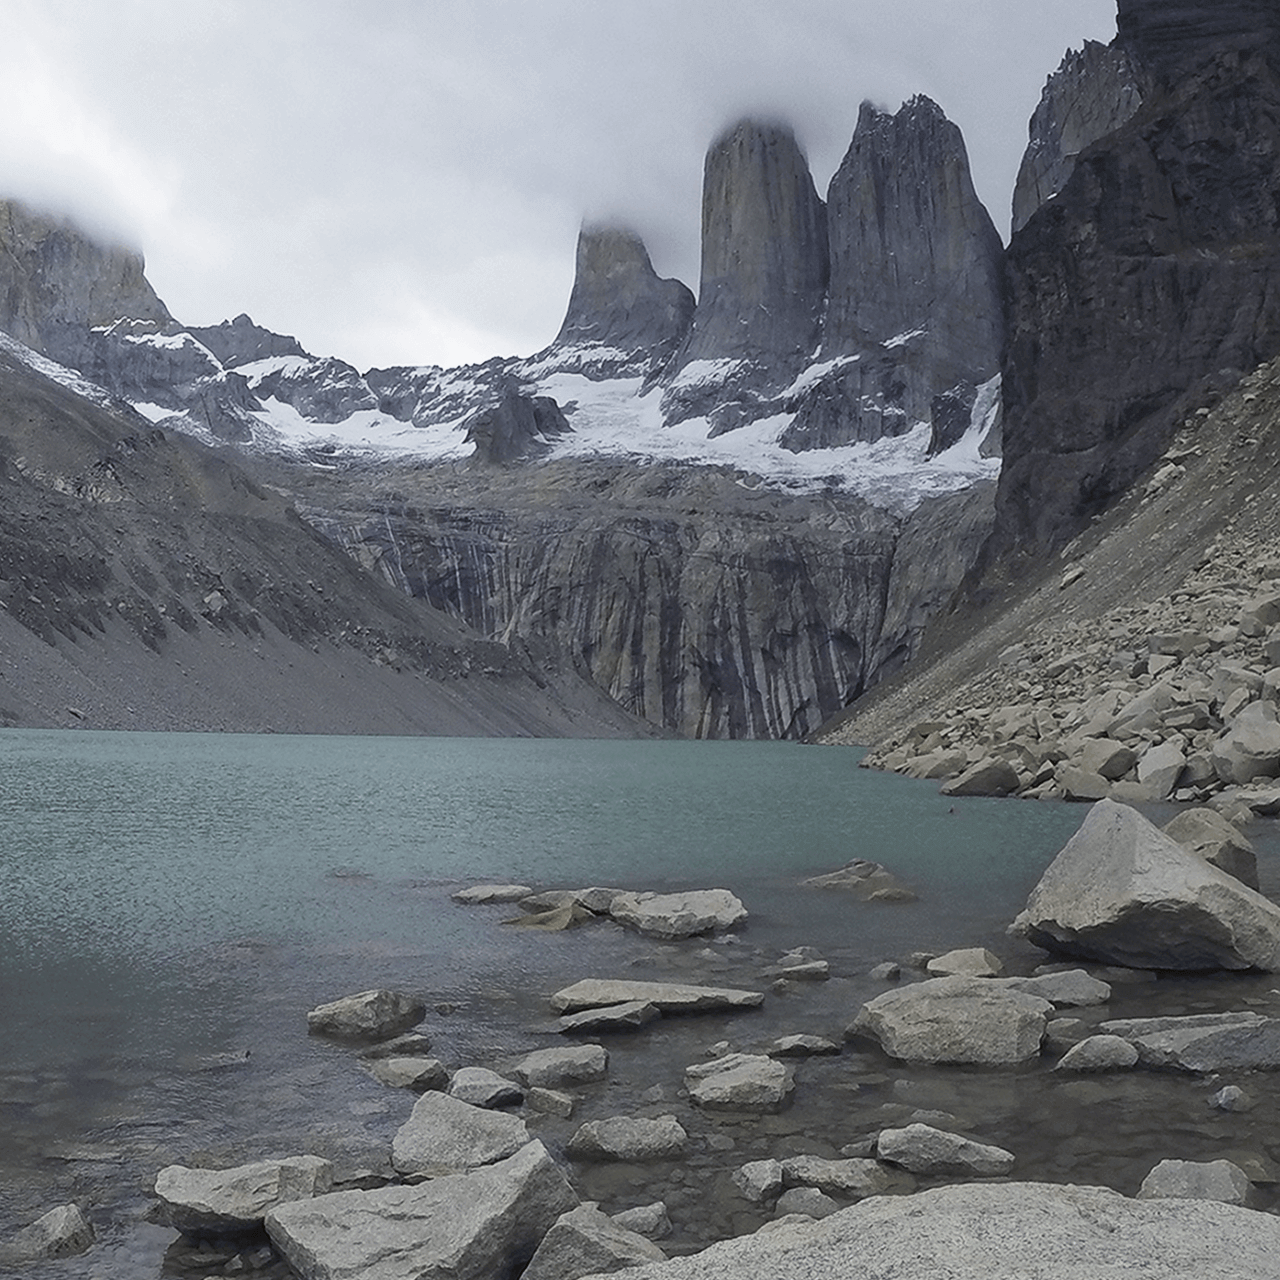 Foto de Torres del Paine, sacada por Floren y Lu el séptimo día de su recorrido en el Parque Nacional